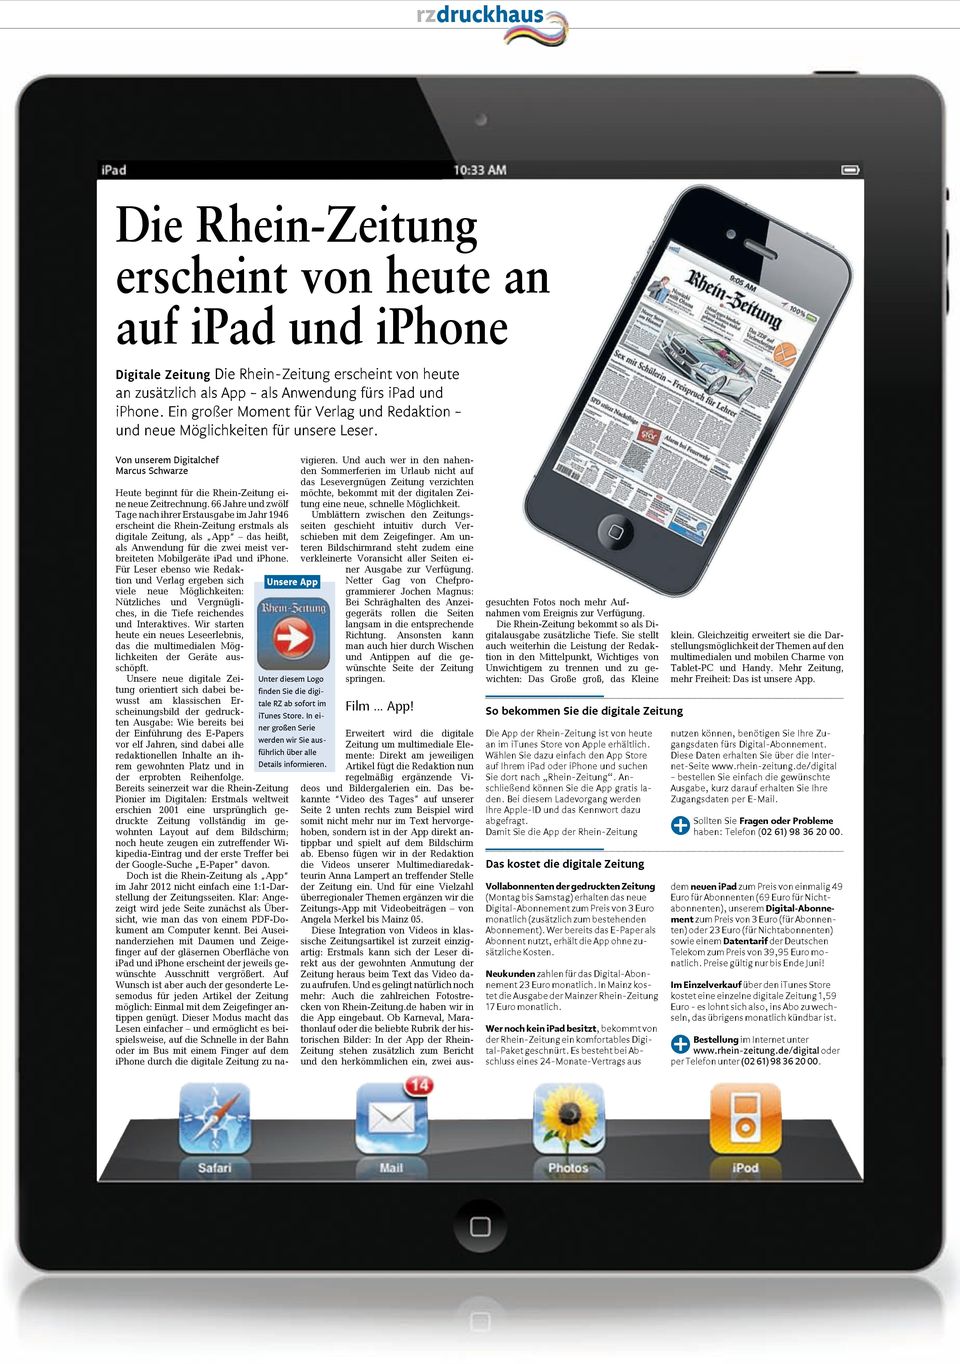 66 Jahre und zwölf Tage nach ihrer Erstausgabe im Jahr 1946 erscheint die Rhein-Zeitung erstmals als digitale Zeitung, als App das heißt, als Anwendung für die zwei meist verbreiteten Mobilgeräte